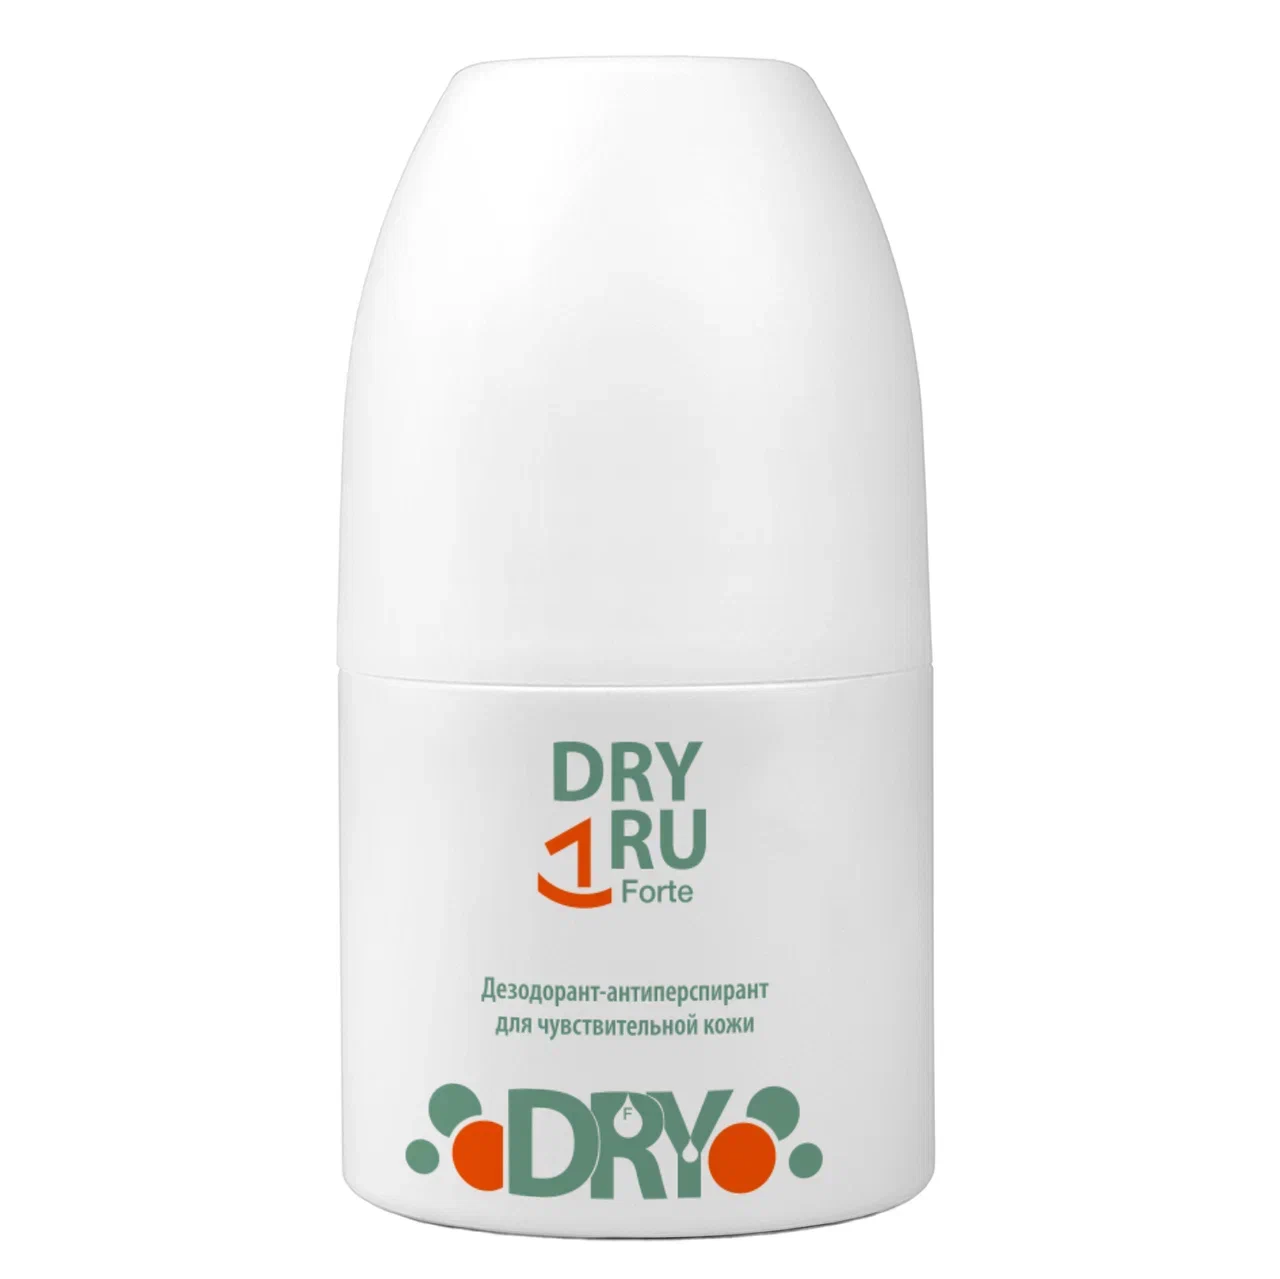 Дезодоран-антиперспирантт DRY RU Forte мужской, шариковый, от пота и запаха 50 мл средство от пота и запаха ног 5 дней 1 5 г пакетики 10 шт